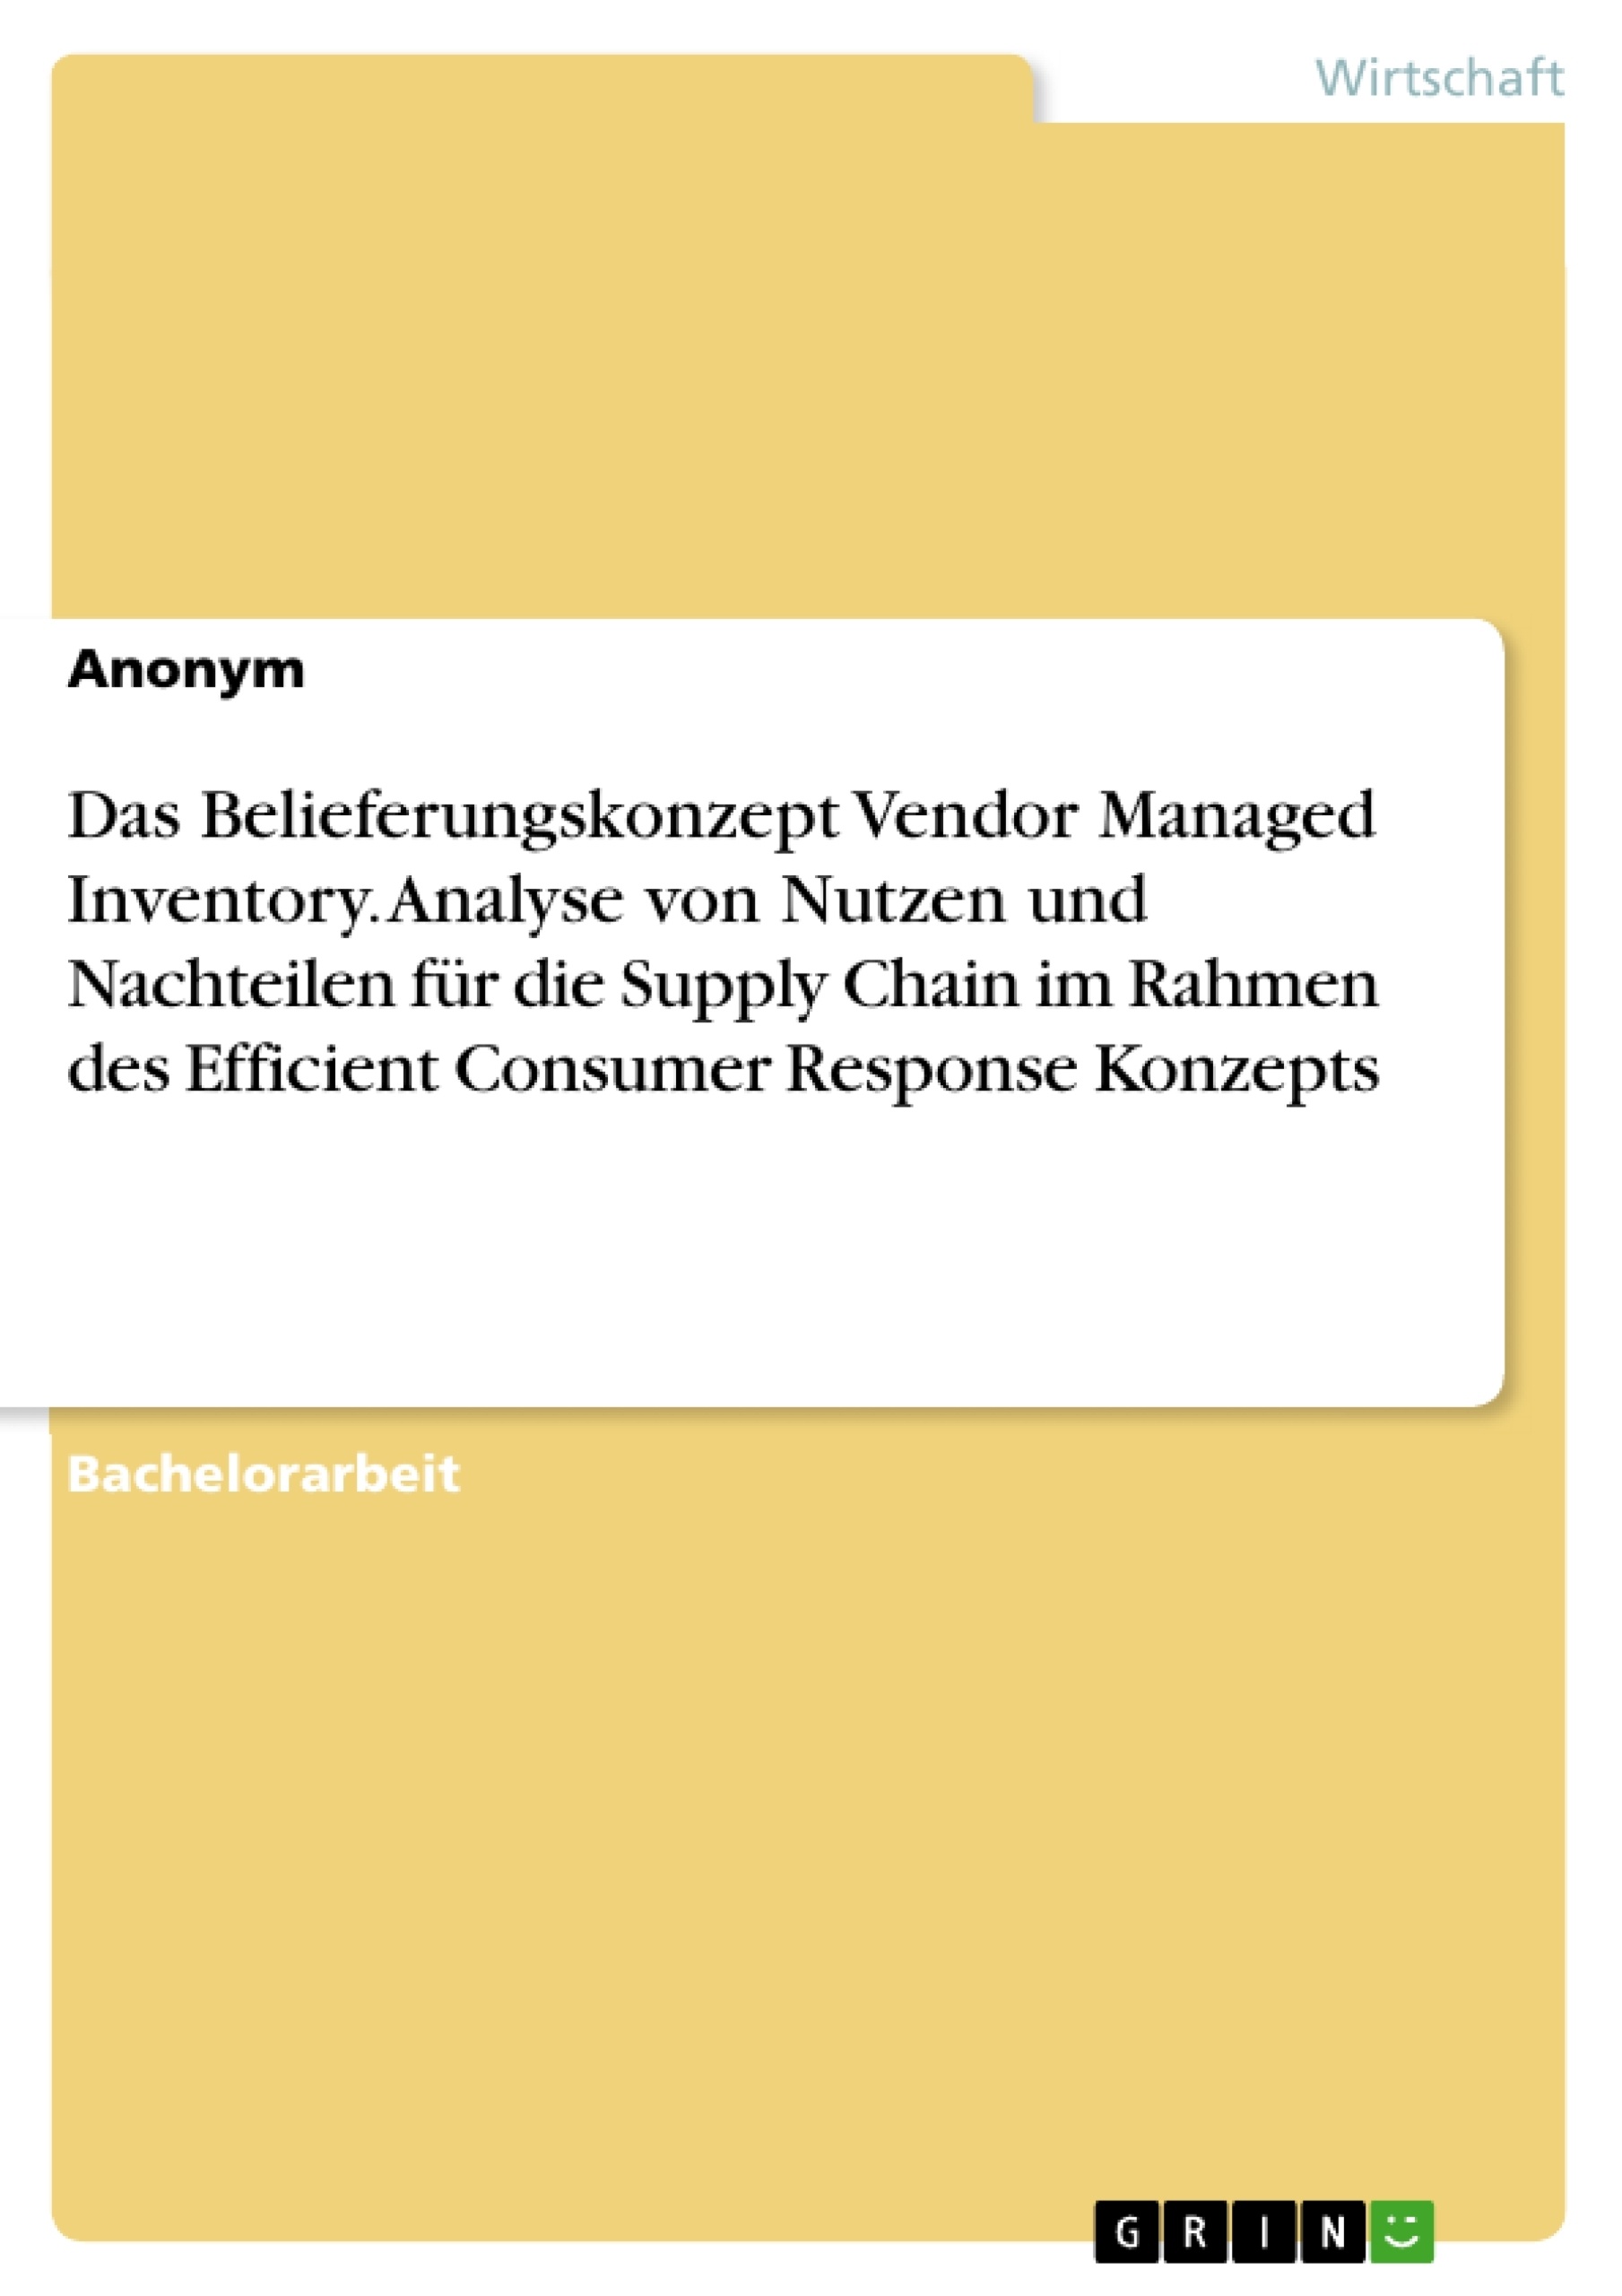 Título: Das Belieferungskonzept Vendor Managed Inventory. Analyse von Nutzen und Nachteilen für die Supply Chain im Rahmen des Efficient Consumer Response Konzepts